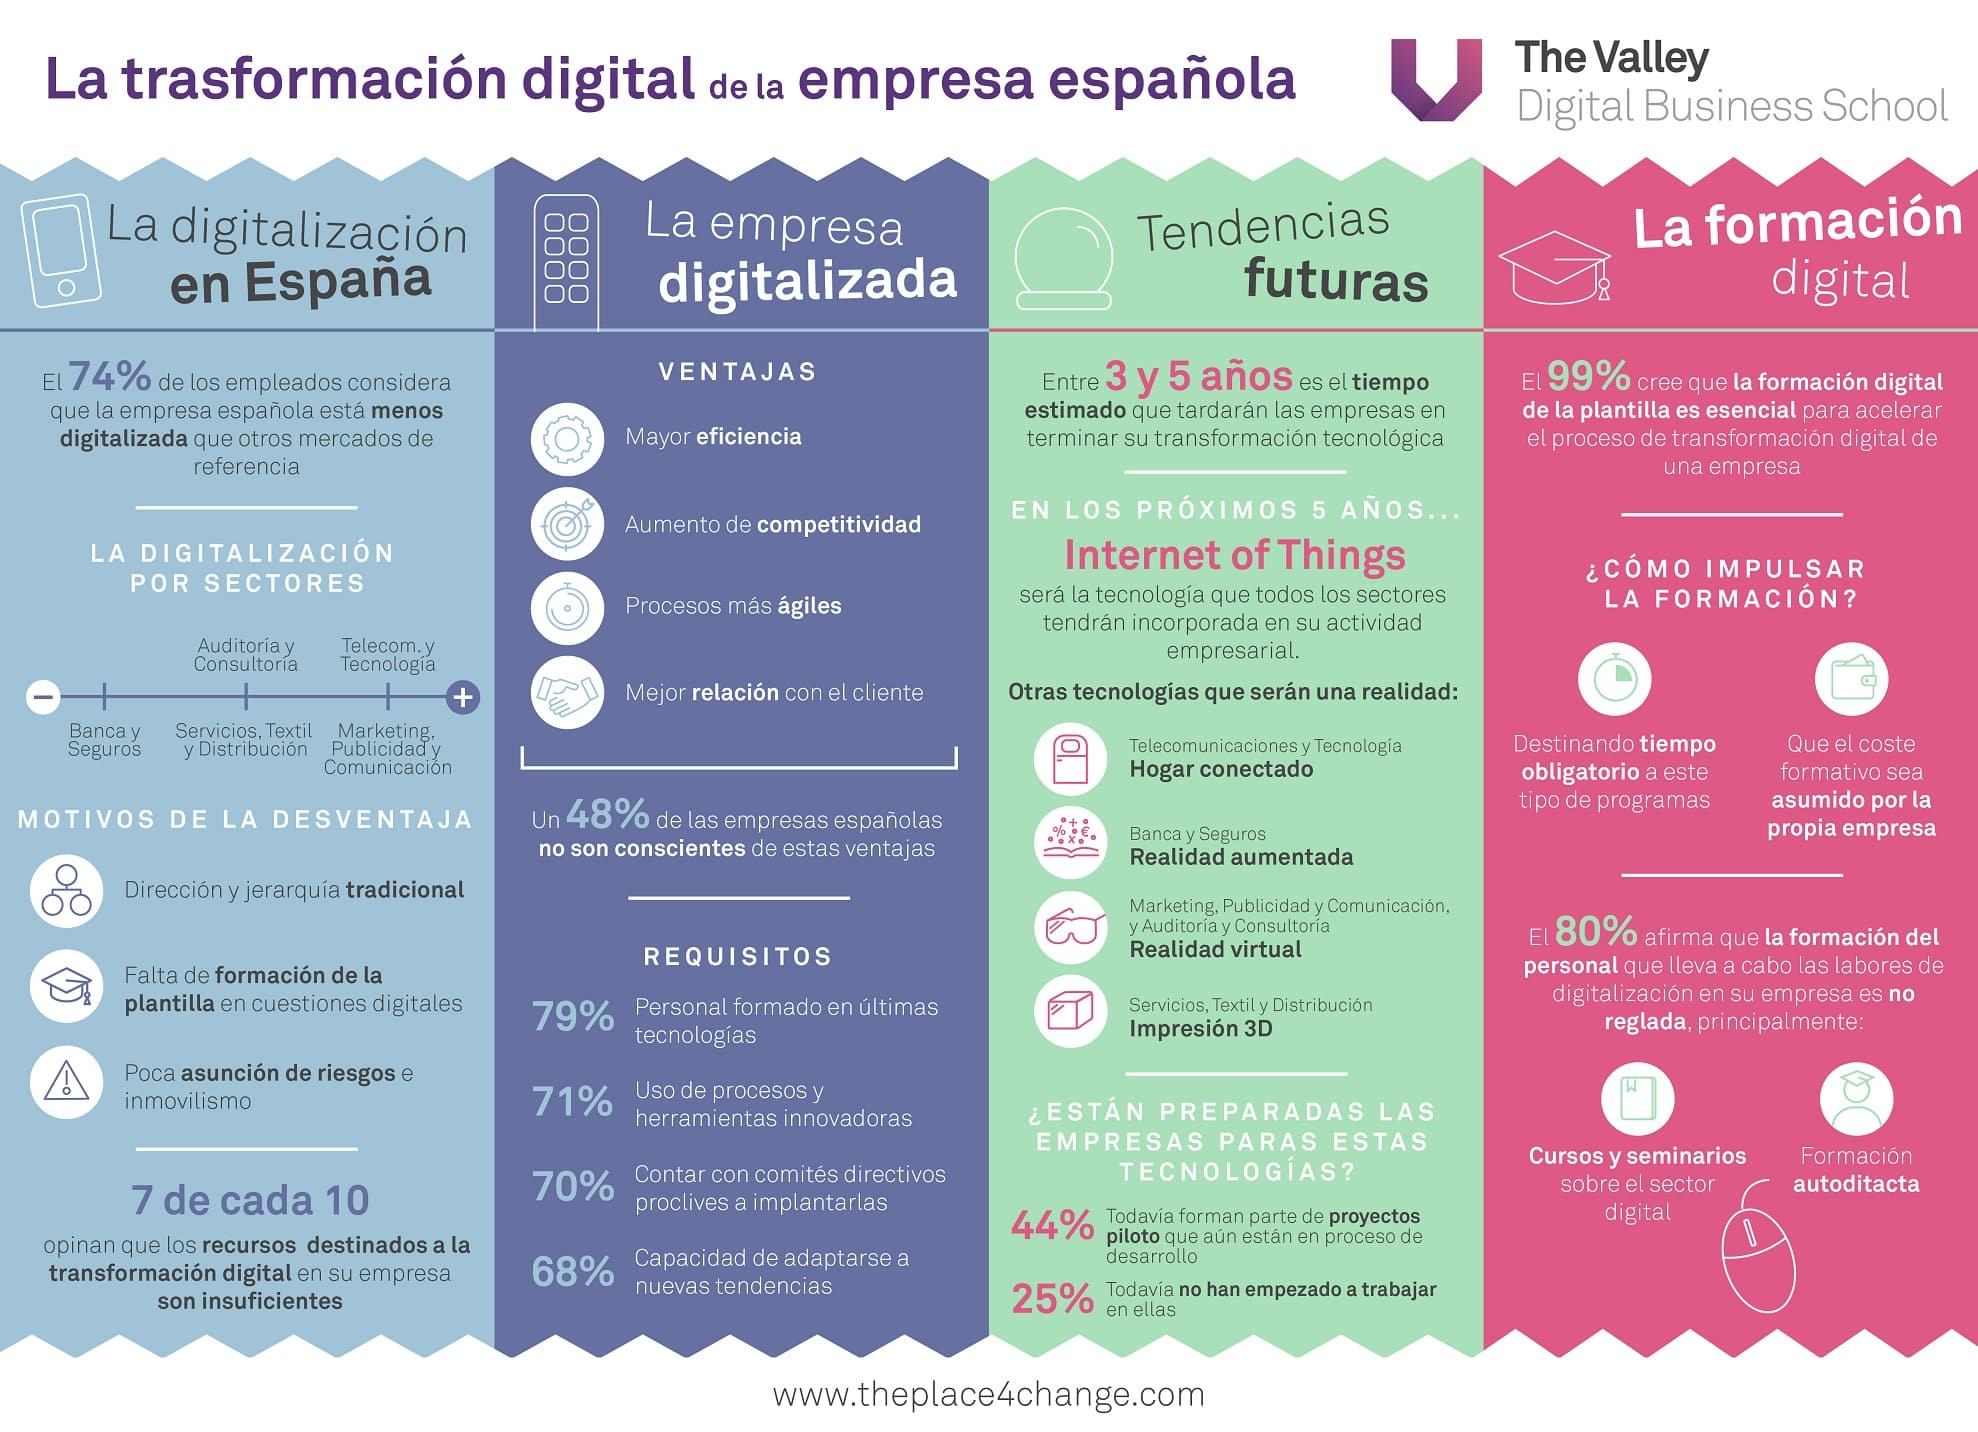 infografia-transformacion-digi-tal-en-la-empresa-espanola